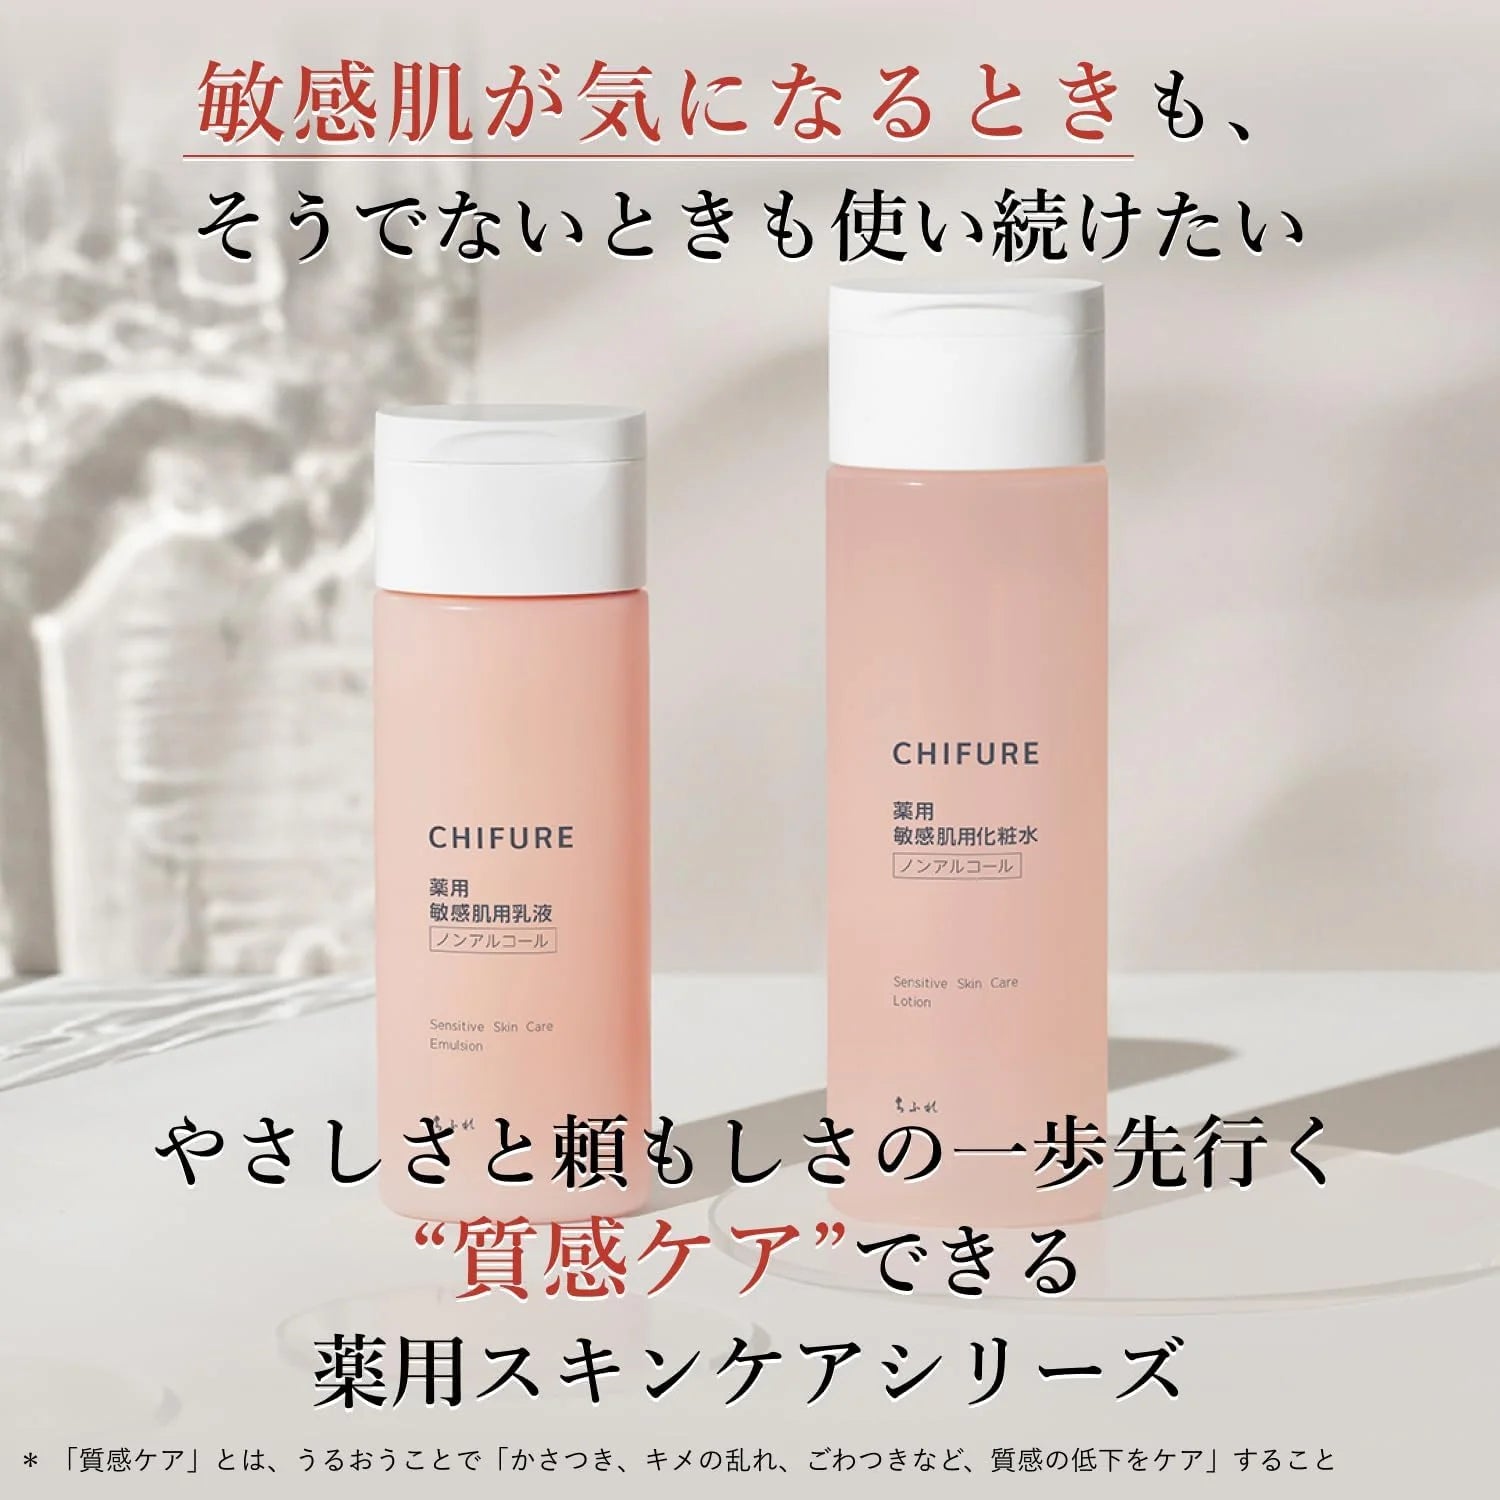 Chifure Sensitive Skin Care Lotion 180ml - Buy Me Japan